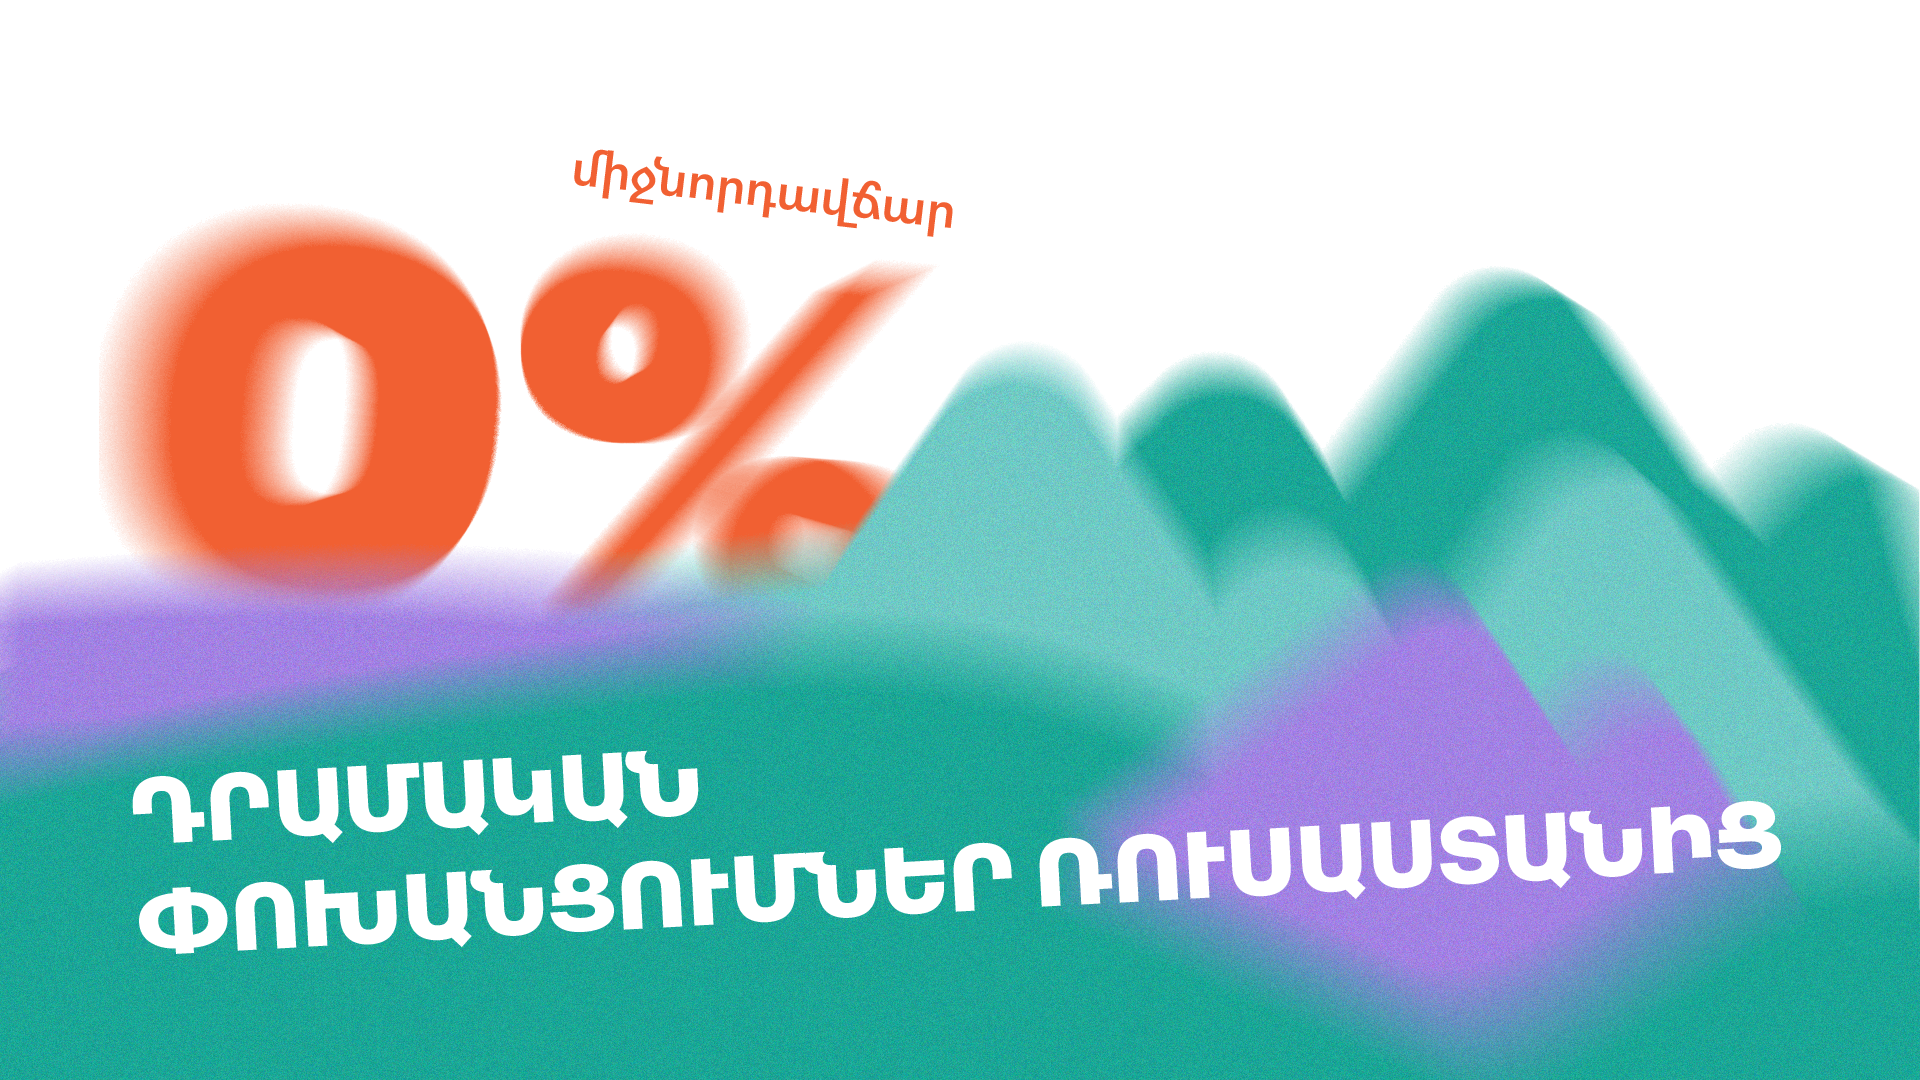 Ռուսաստանից Հայաստան դրամական փոխանցումներ 0% միջնորդավճարով